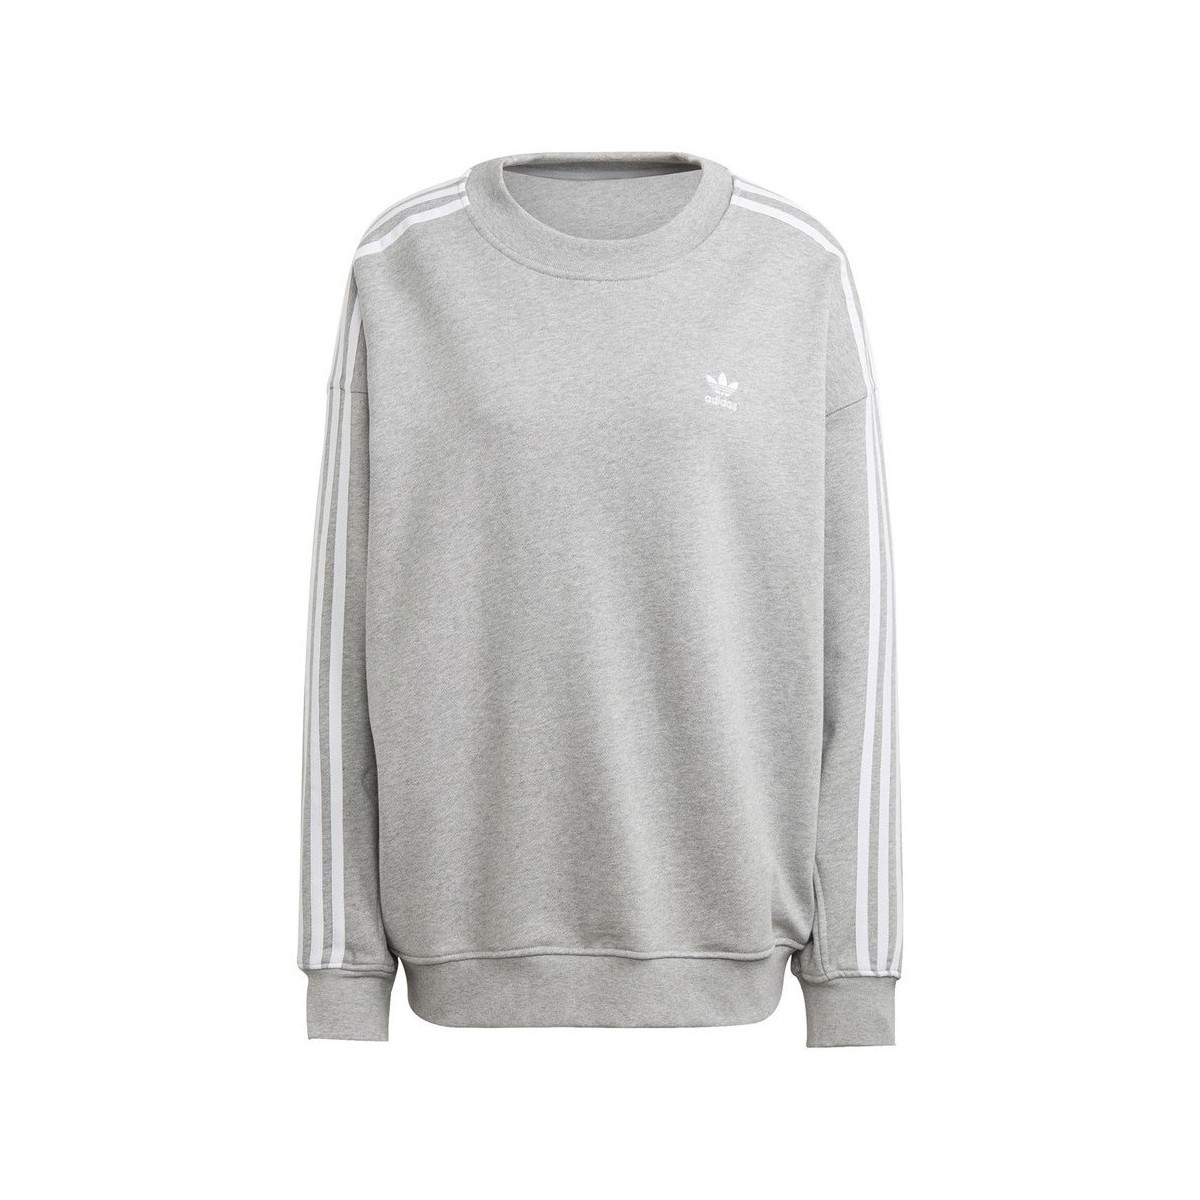 textil Dame Sweatshirts adidas Originals Oversized Sweatshirt Grå